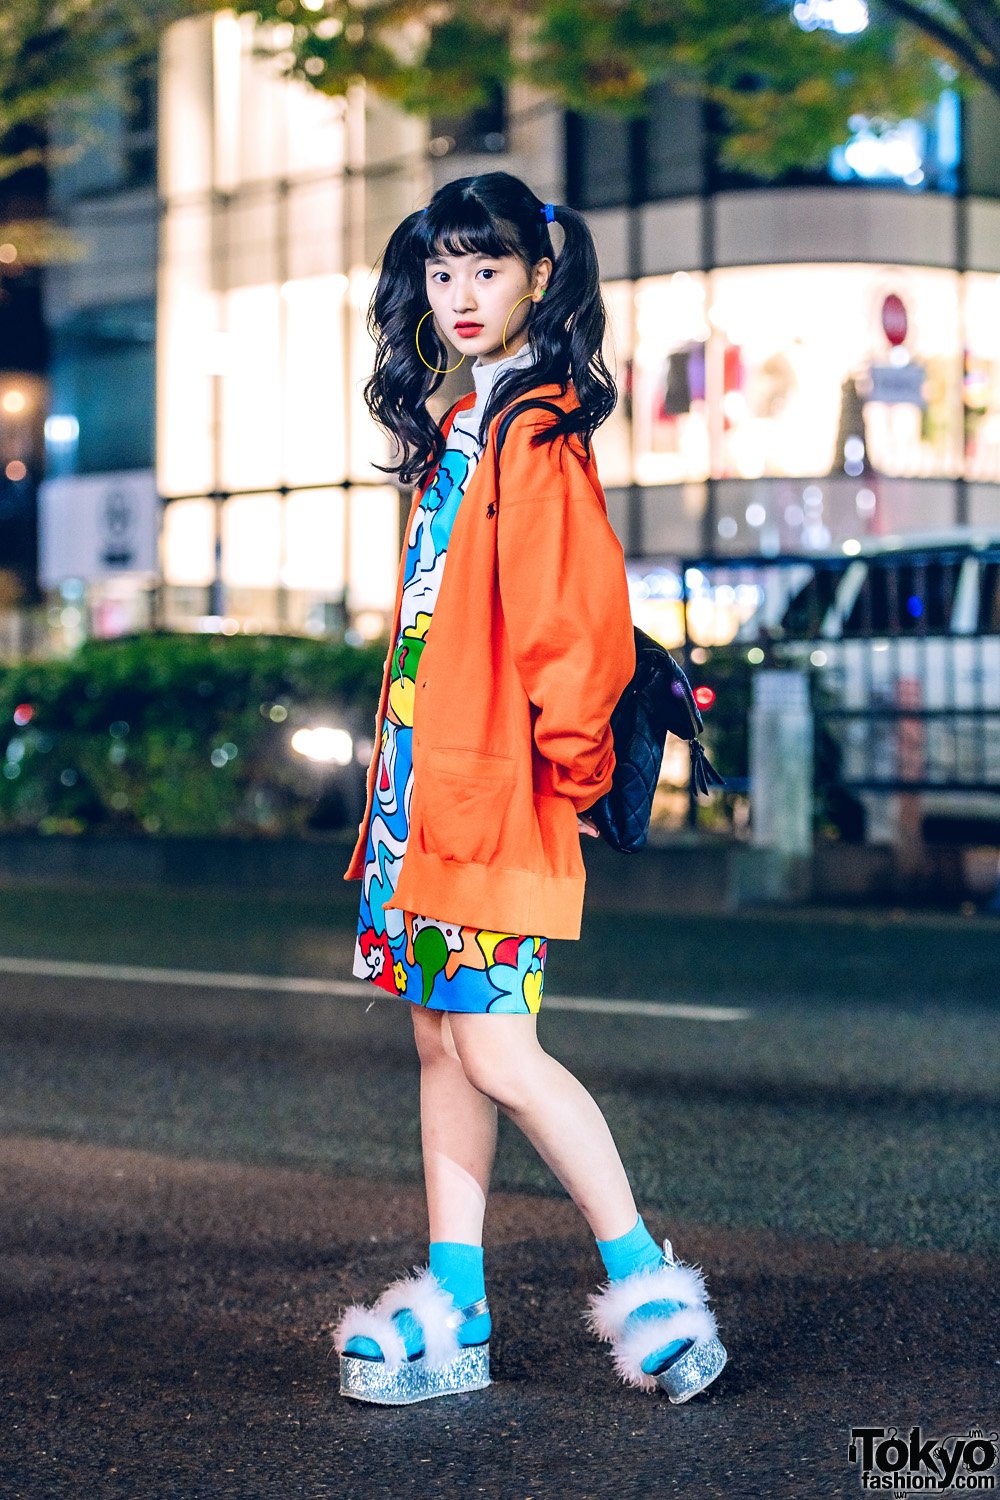 Tokyo Fashion on X: 14-year-old Japanese aspiring actress A-Pon